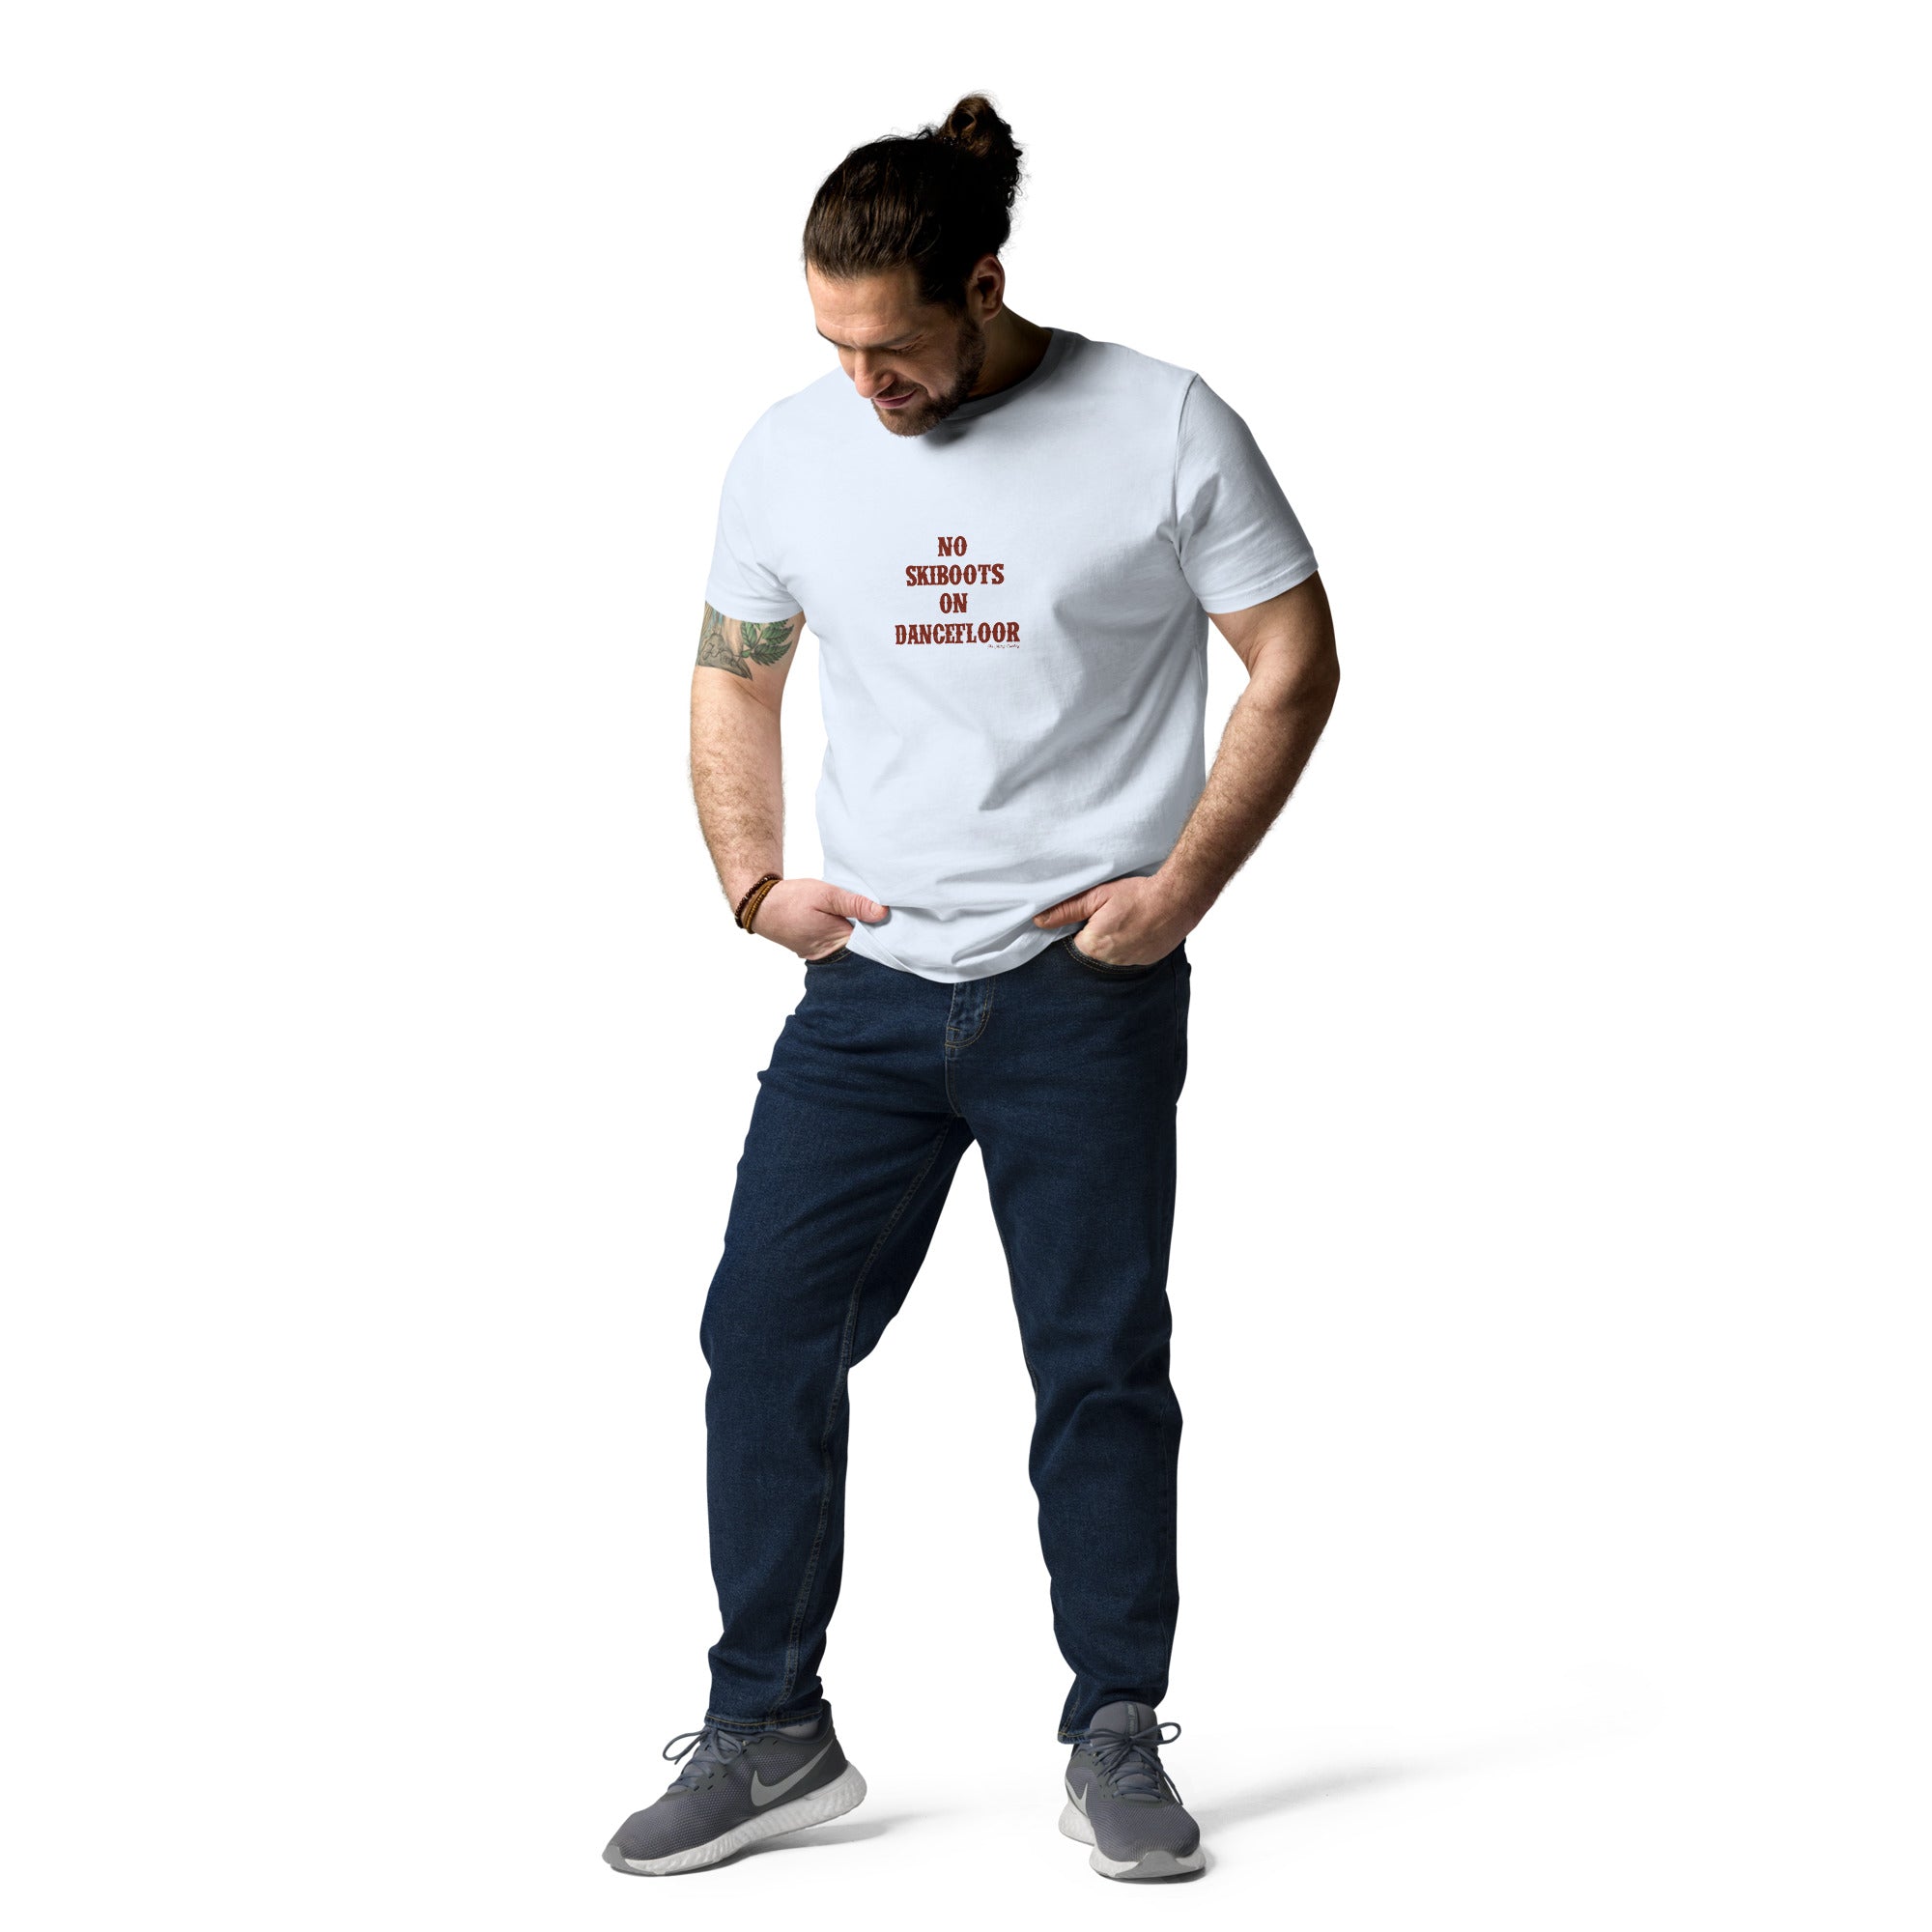 T-shirt unisexe en coton biologique No Skiboots on Dancefloor texte foncé